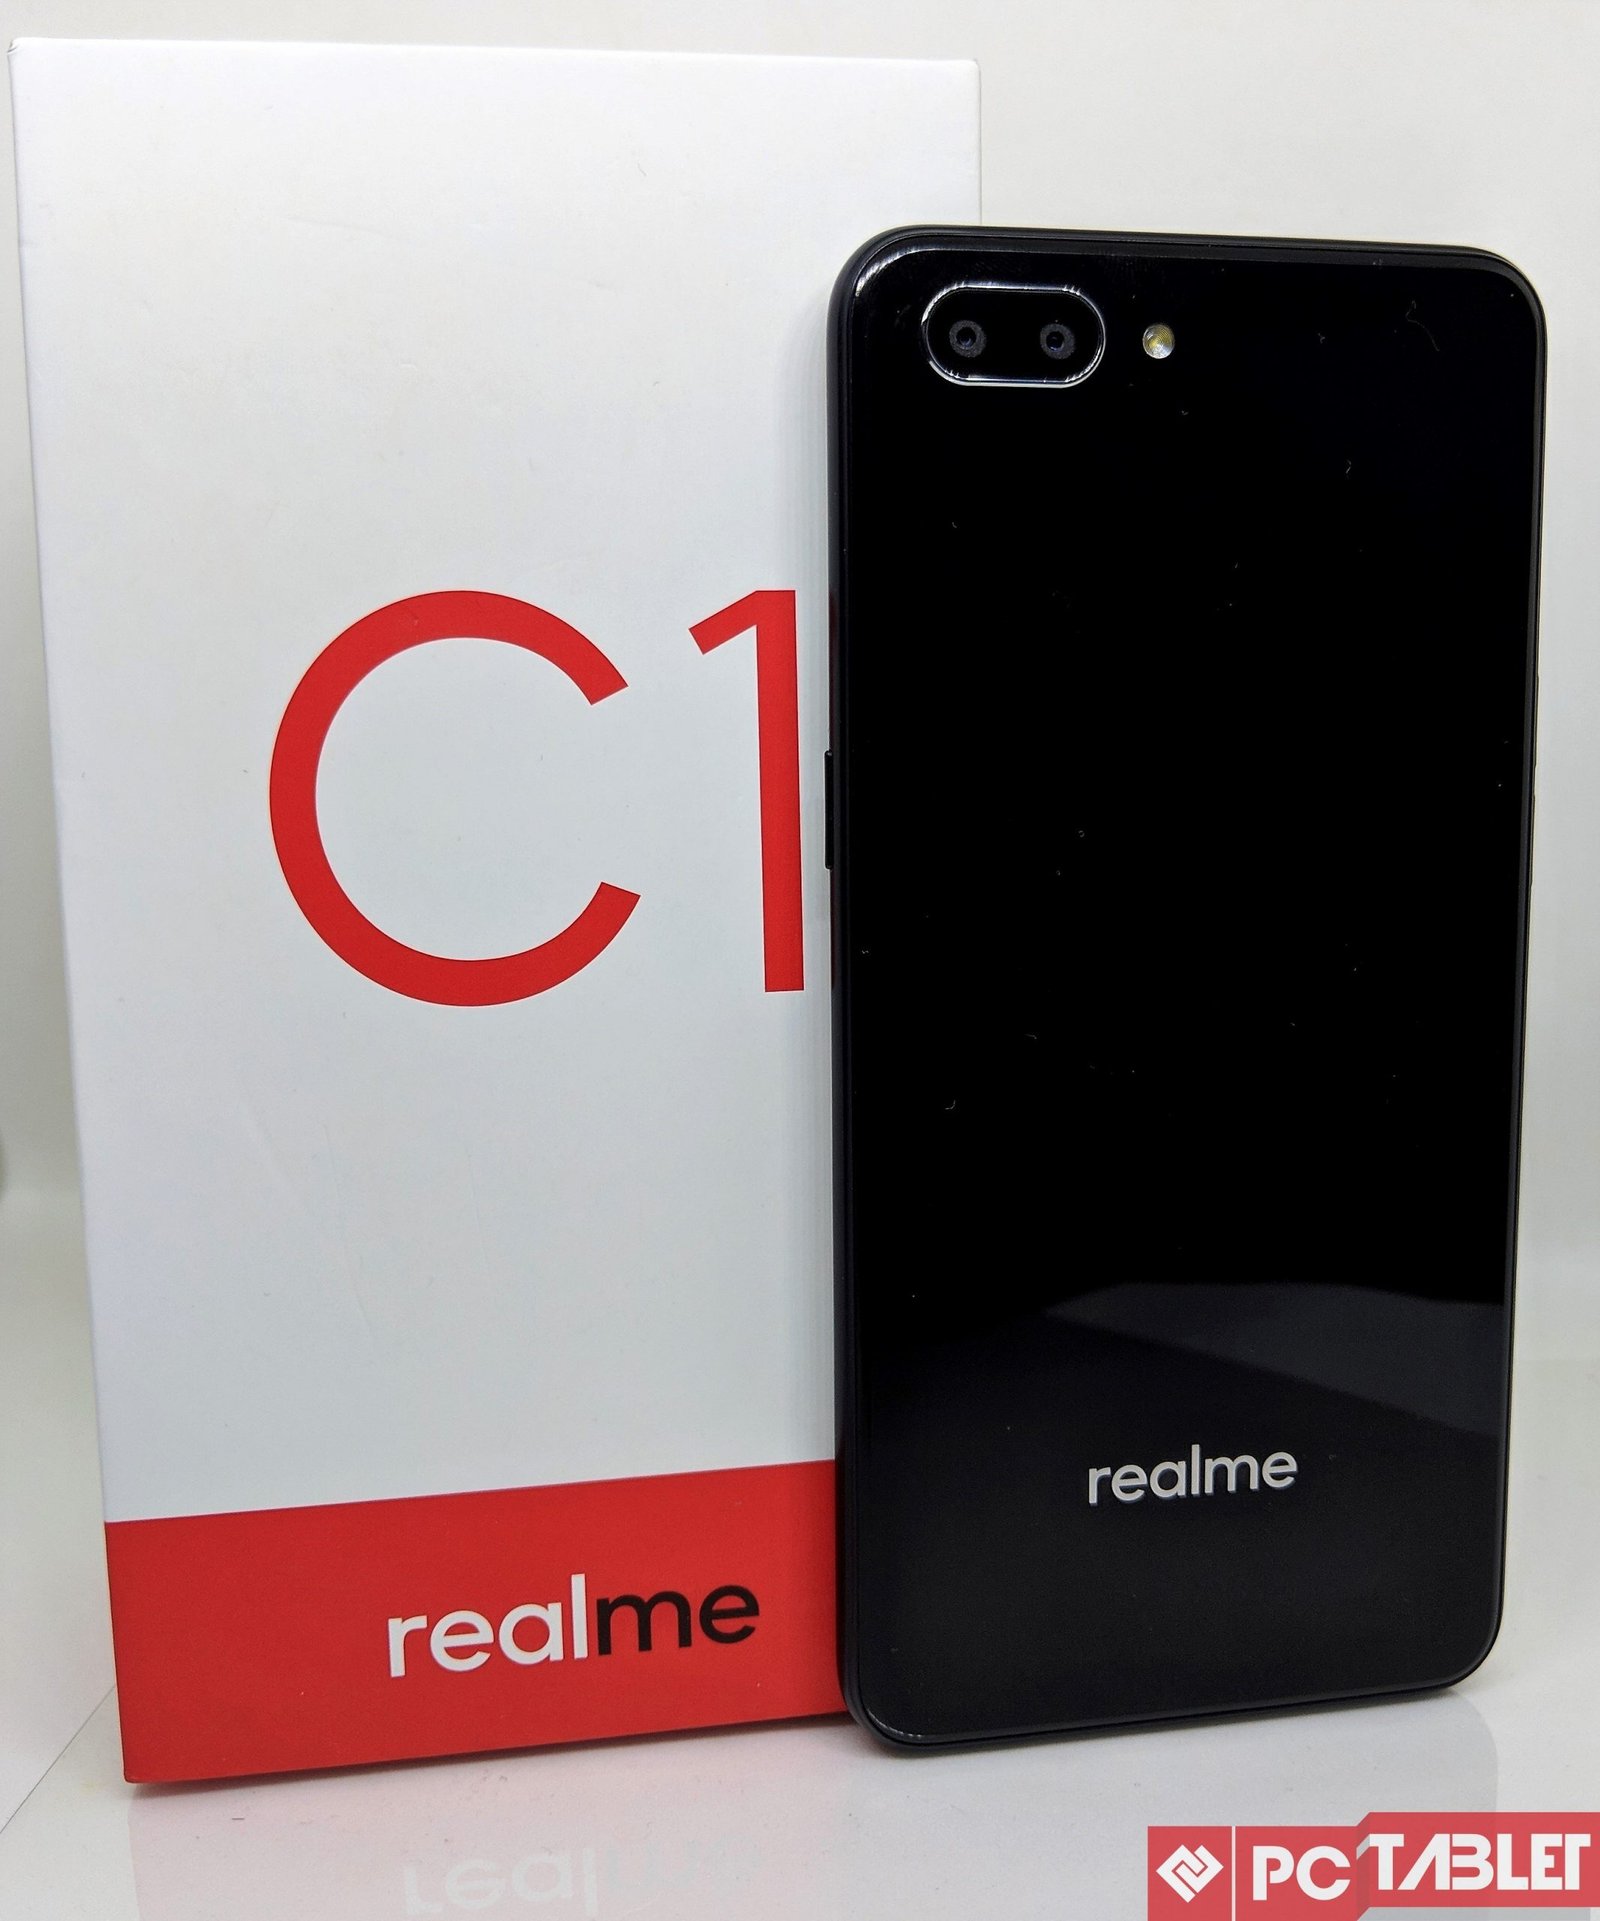 Realme C1 Box 2 scaled